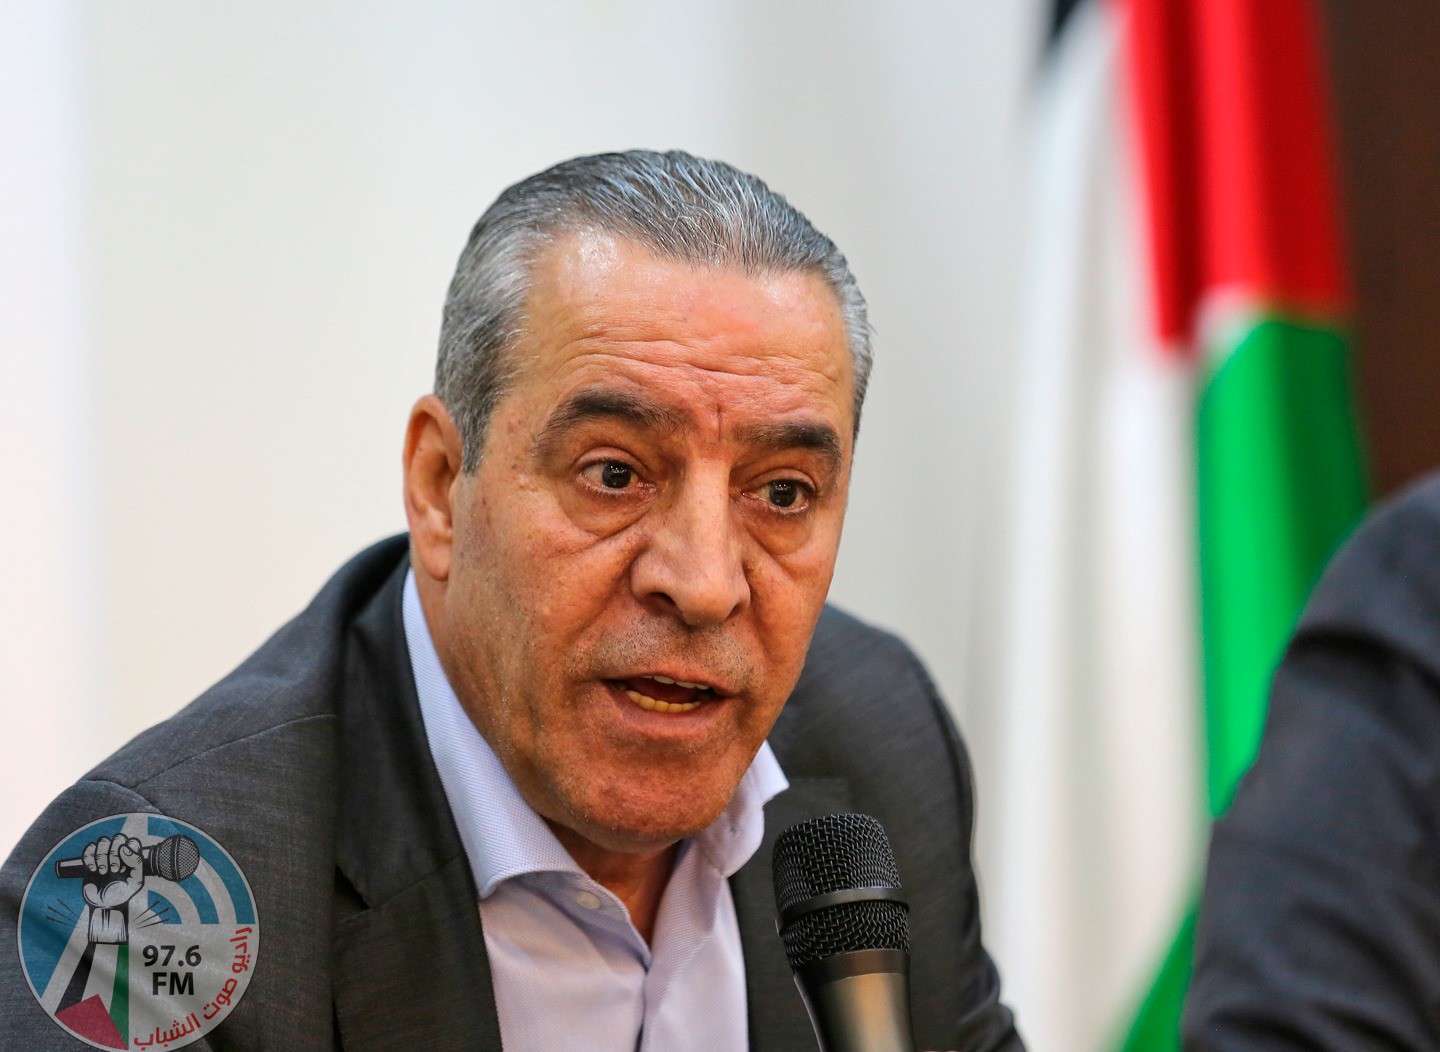 الشيخ ينفي تصريحات وزير إسرائيلي حول عزم السلطة وقف رواتب الأسرى